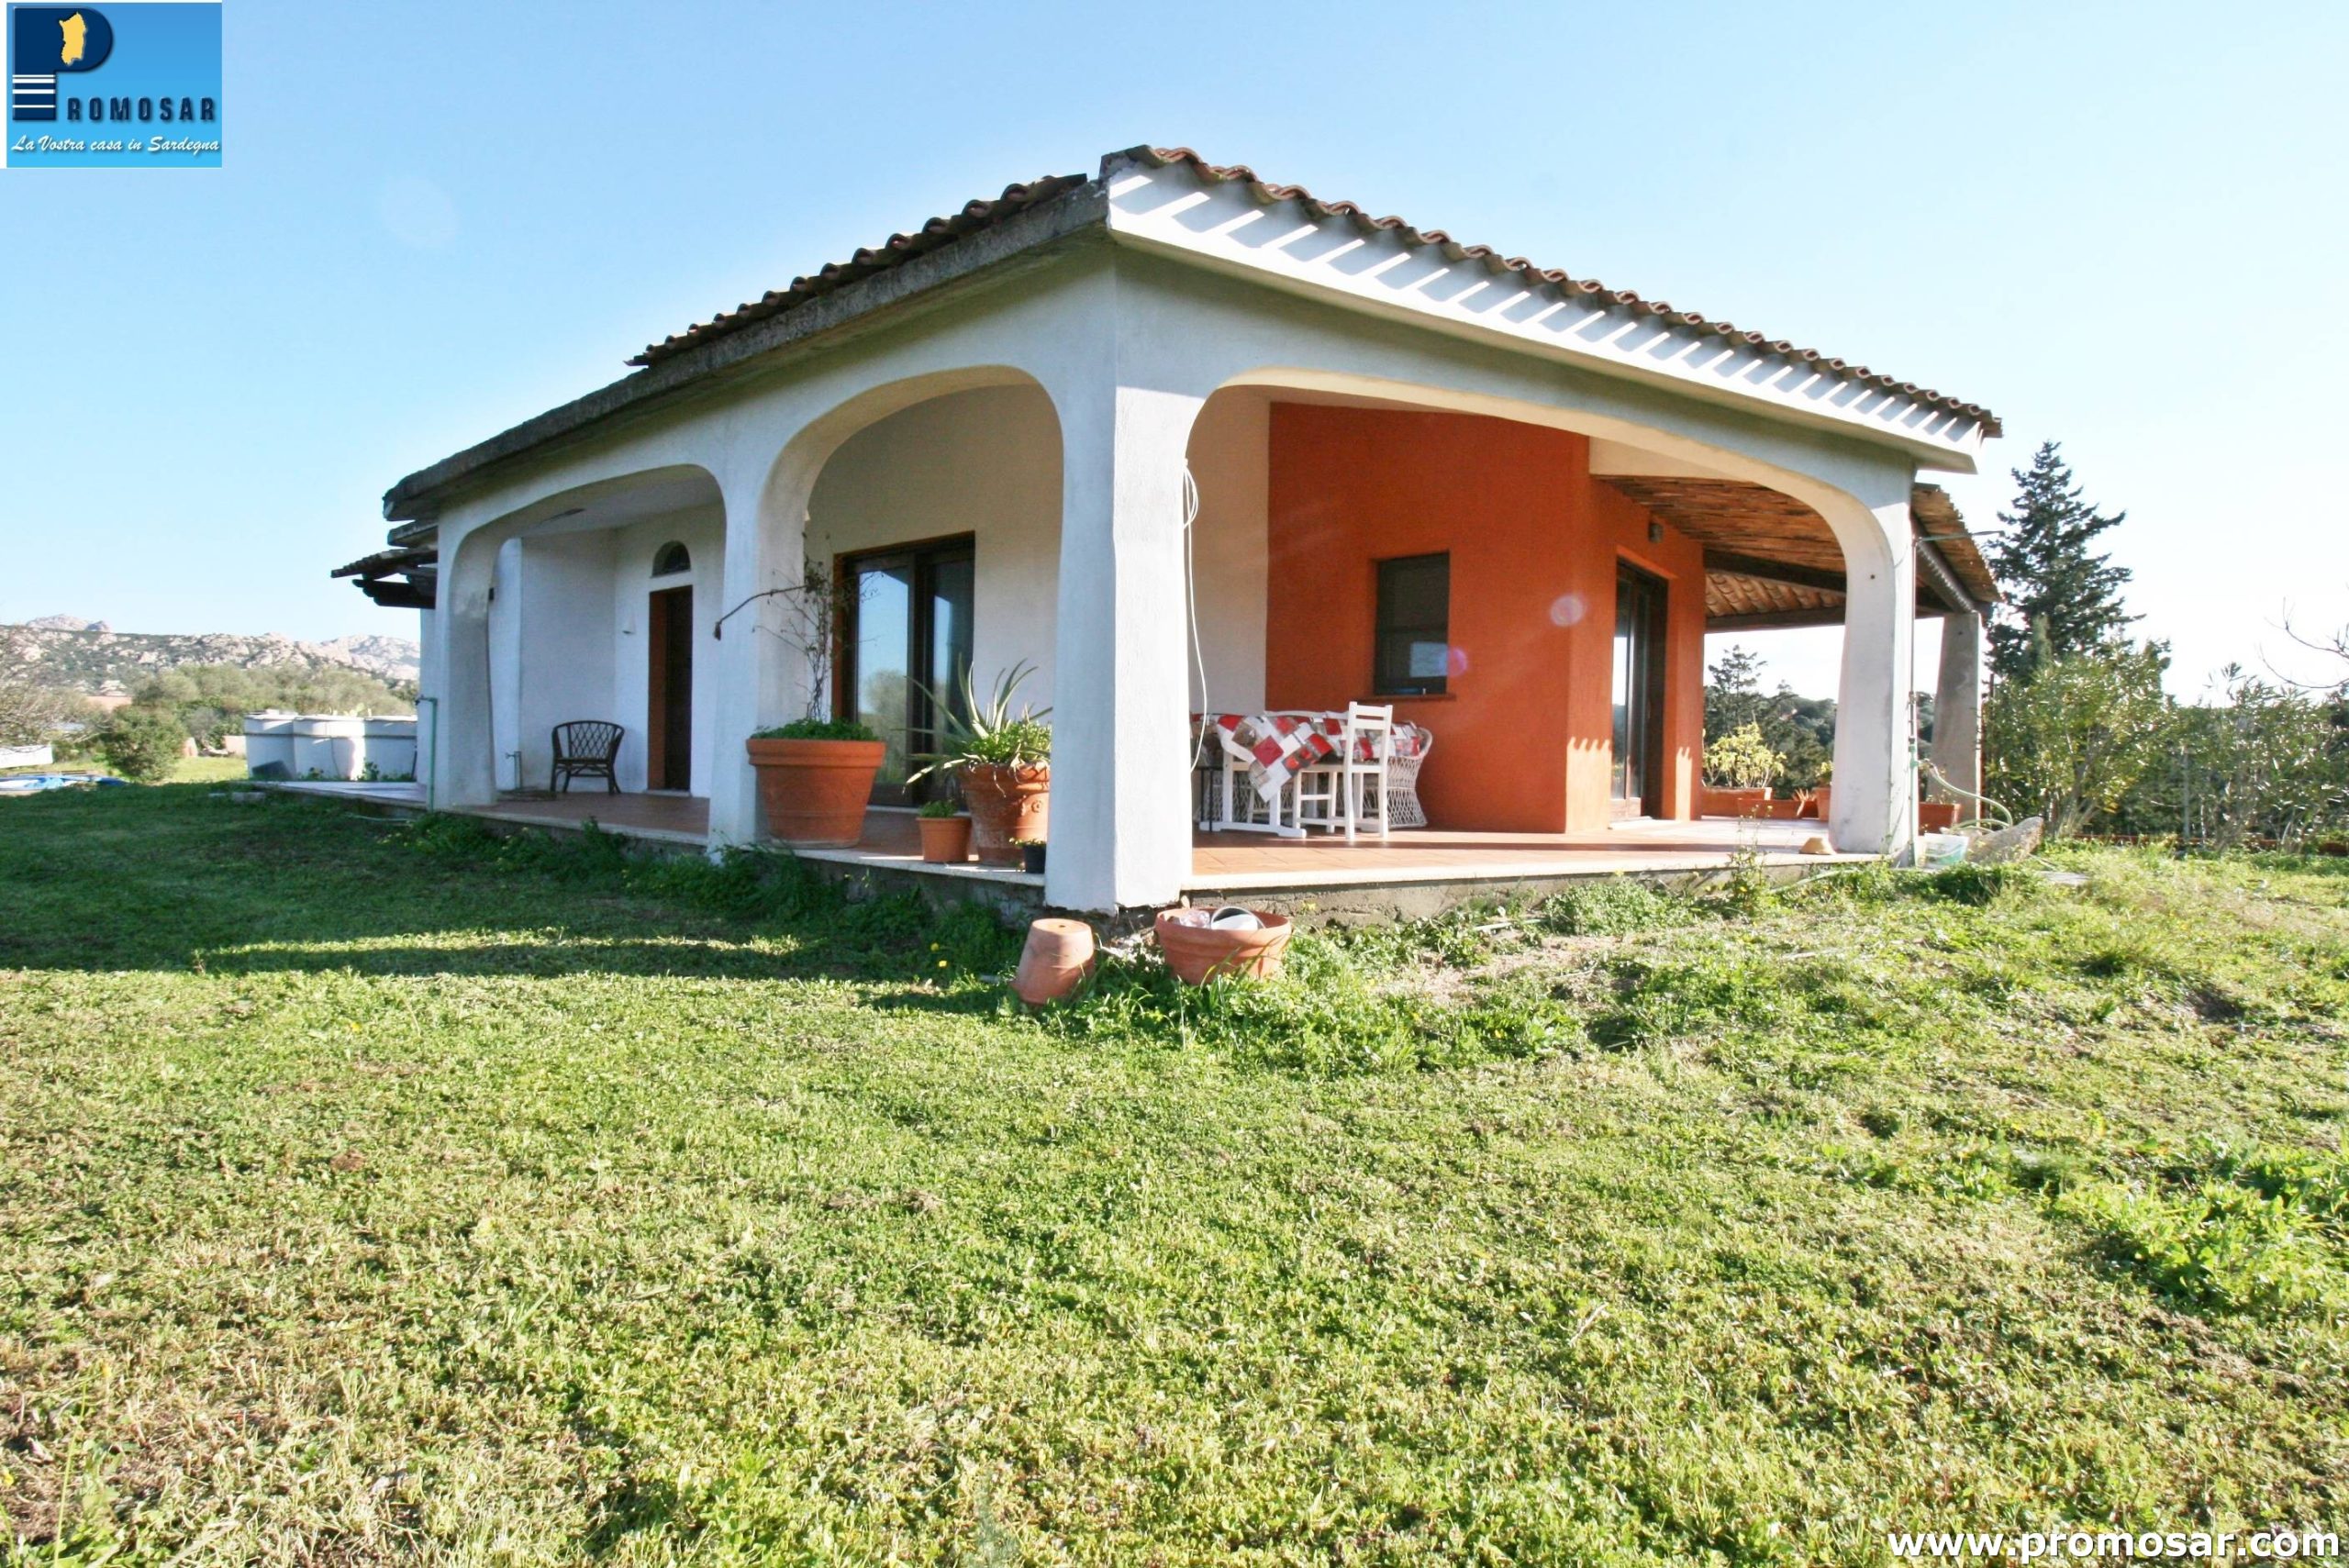 Country villa near San Pantaleo